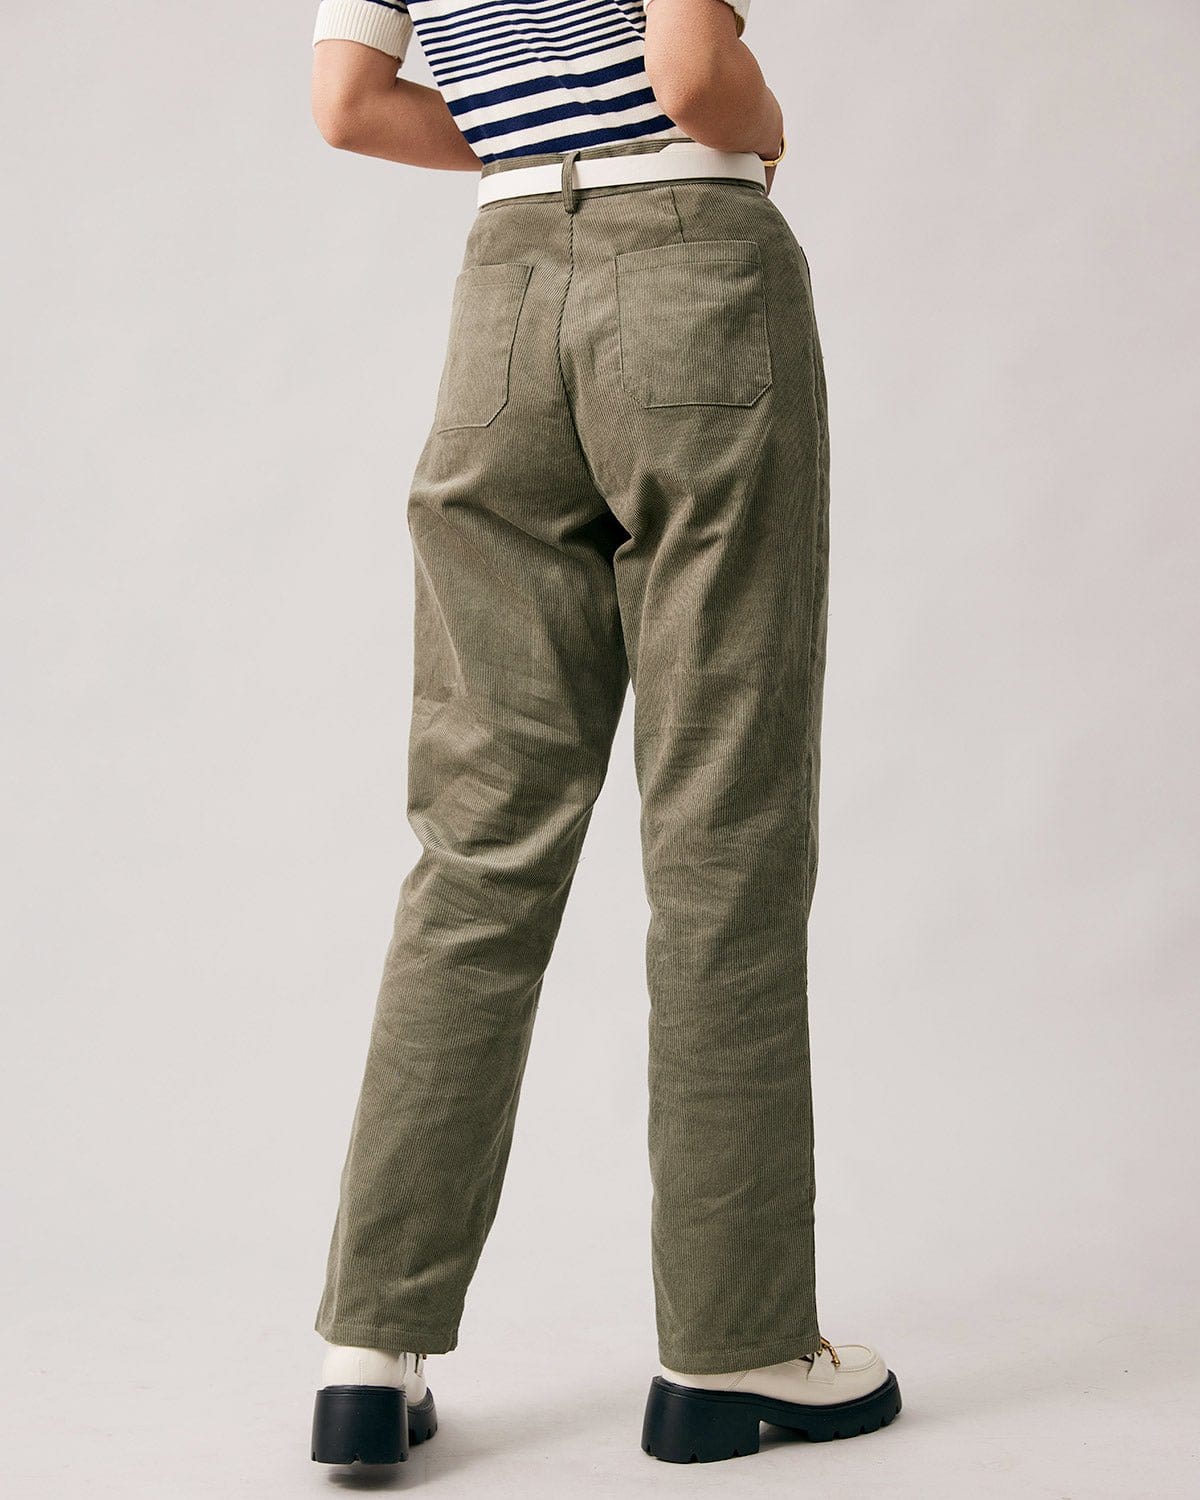 Green Corduroy Pants - Wide-Leg Pants - Stretch Corduroy Pants - Lulus